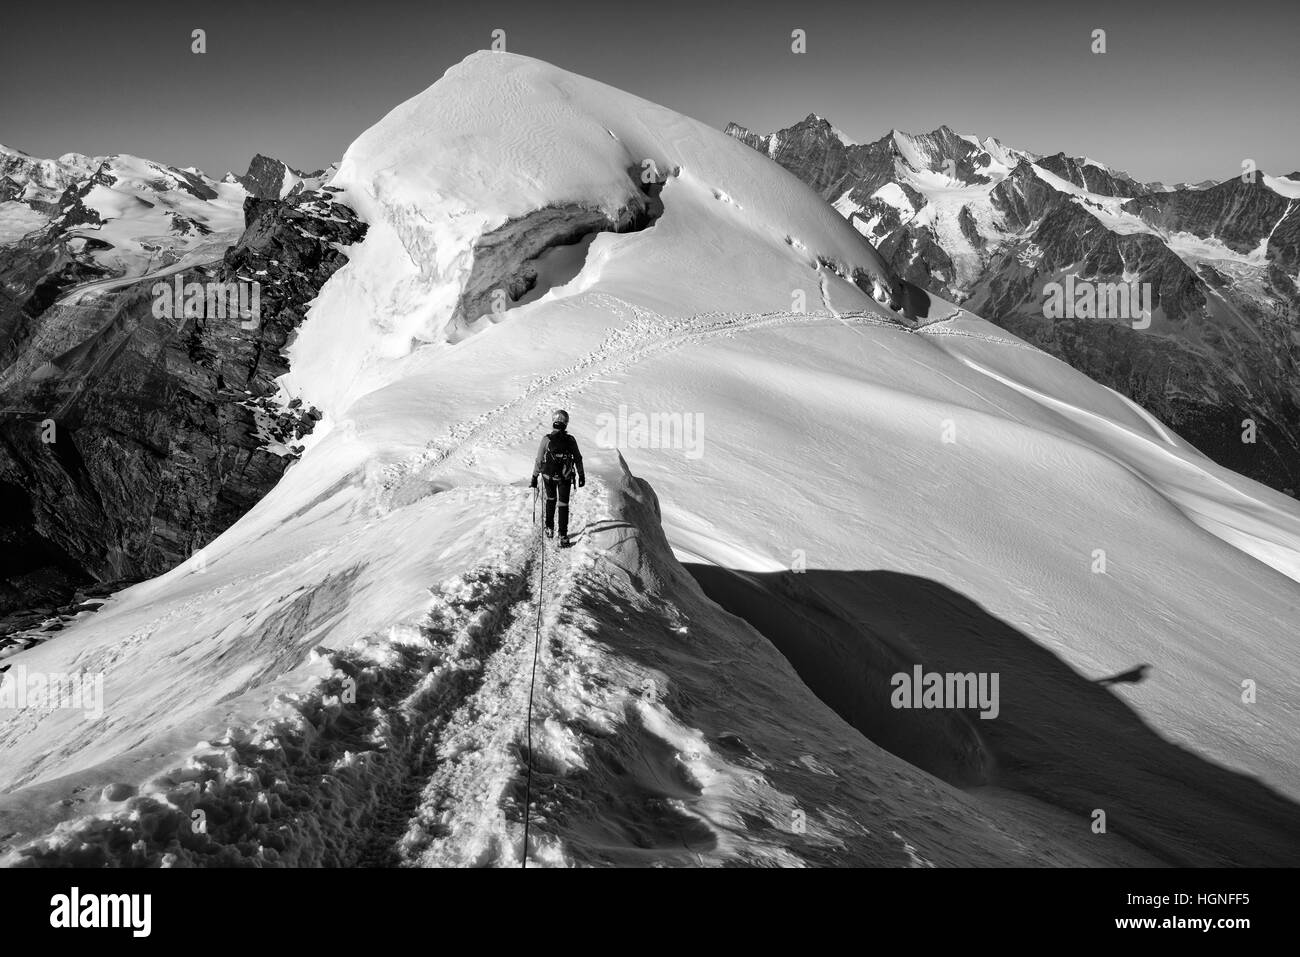 Un escalador descendiendo un glaciar alpino Foto de stock